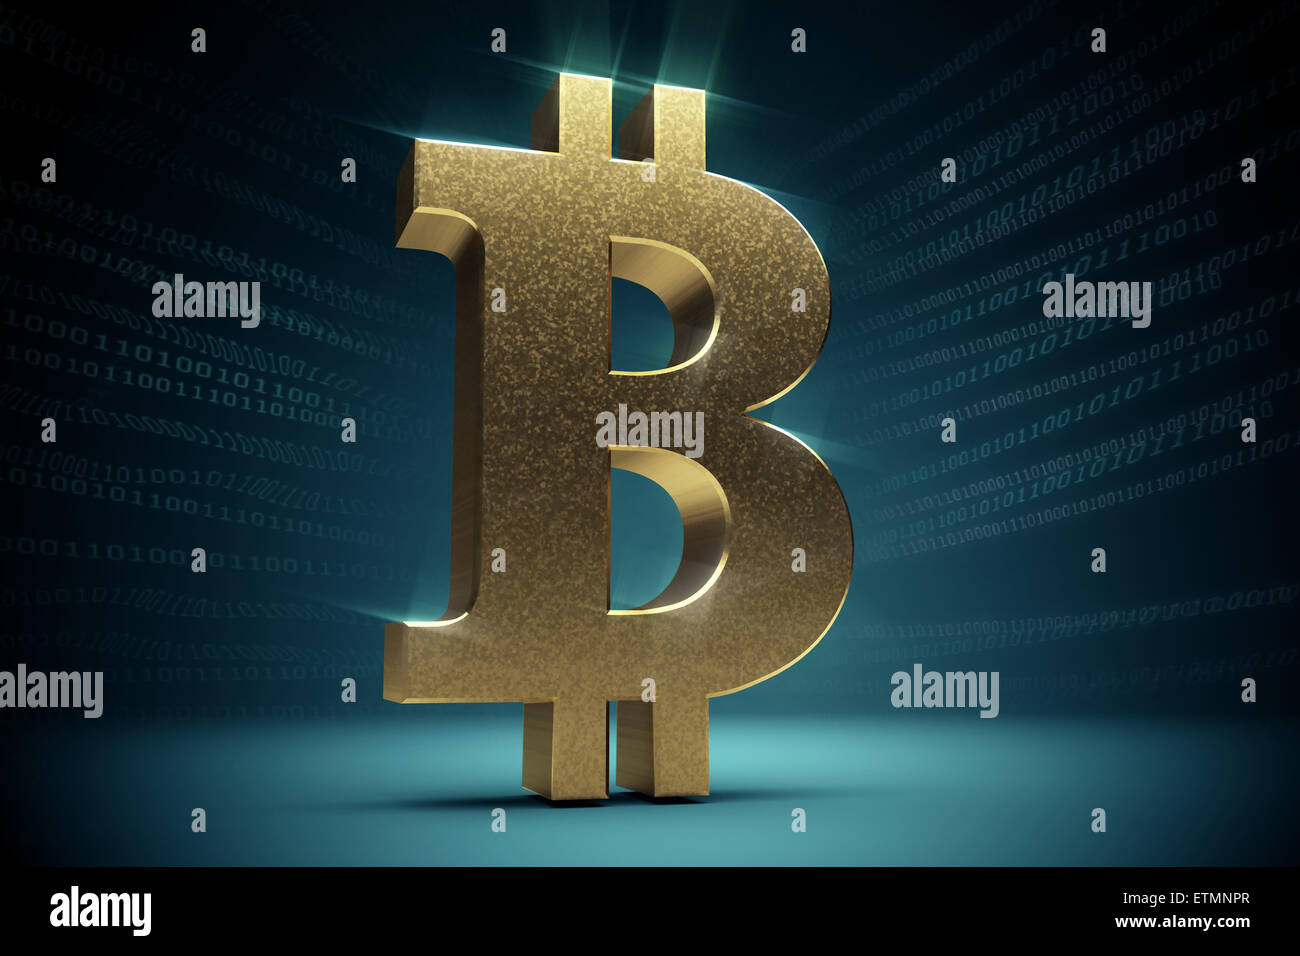 Rappresentazione stilizzata di Bitcoin, una valuta digitale. Foto Stock